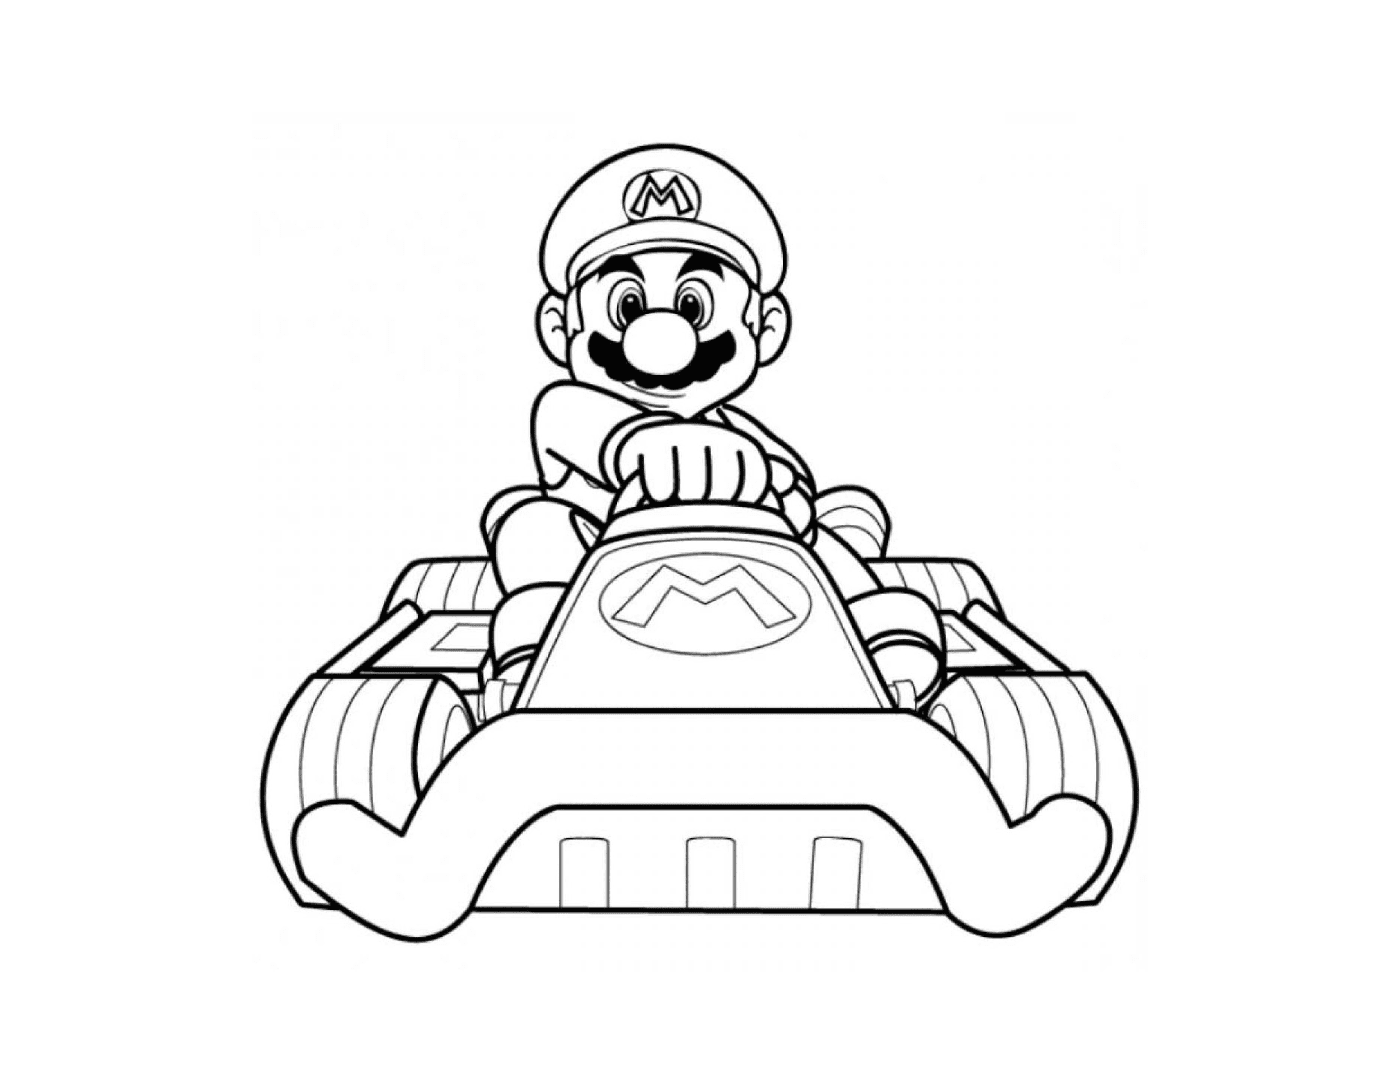  Mario Kart Wii com seu carro colorido 